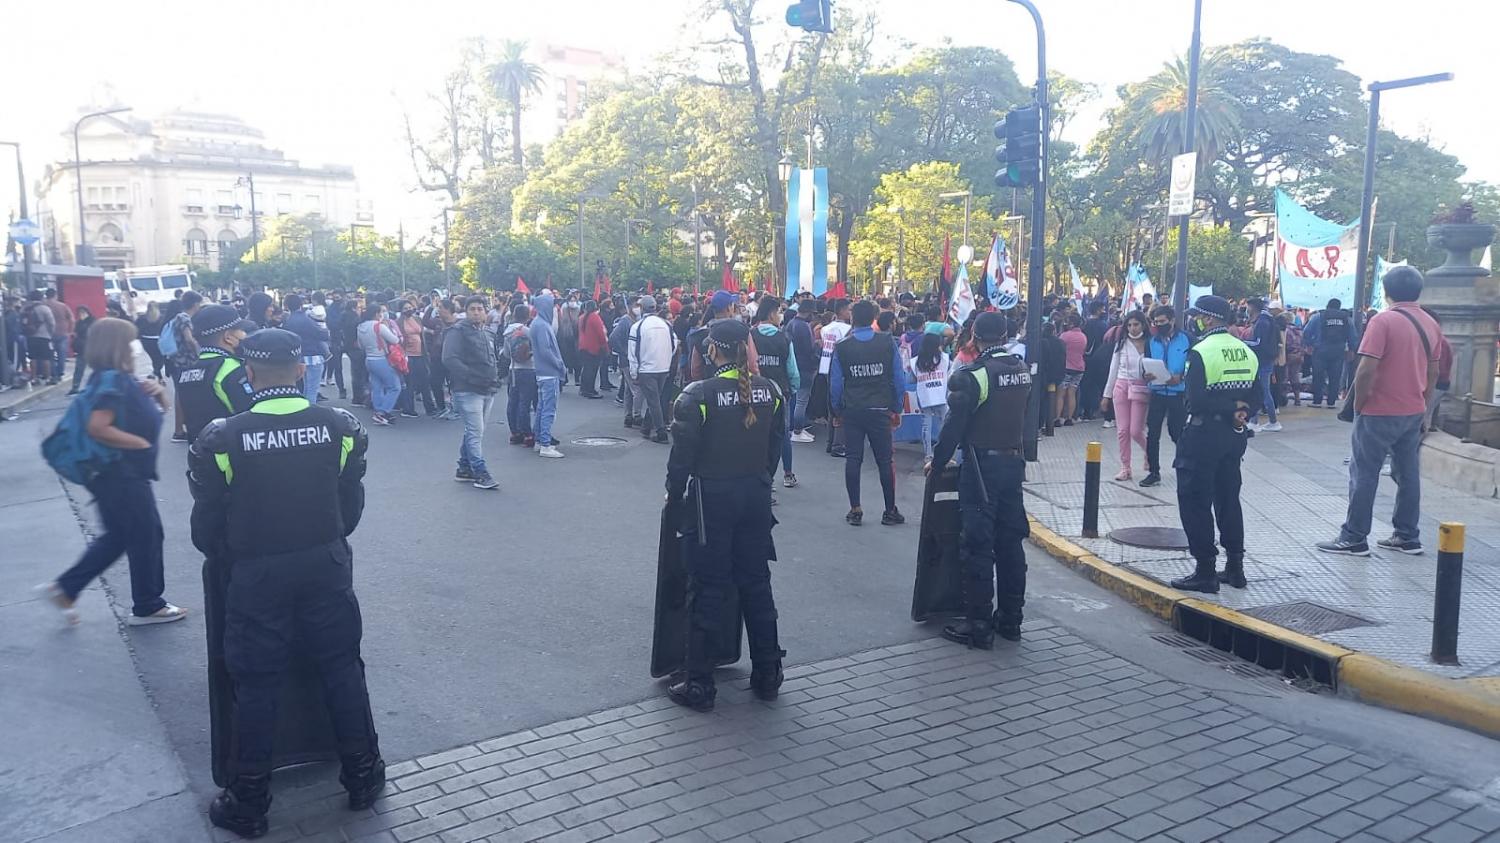 CUSTODIA POLICIAL. Agentes fueron apostados en las afueras de la Casa de Gobierno por el piquete en la plaza. Foto de LA GACETA / Analía Jaramillo